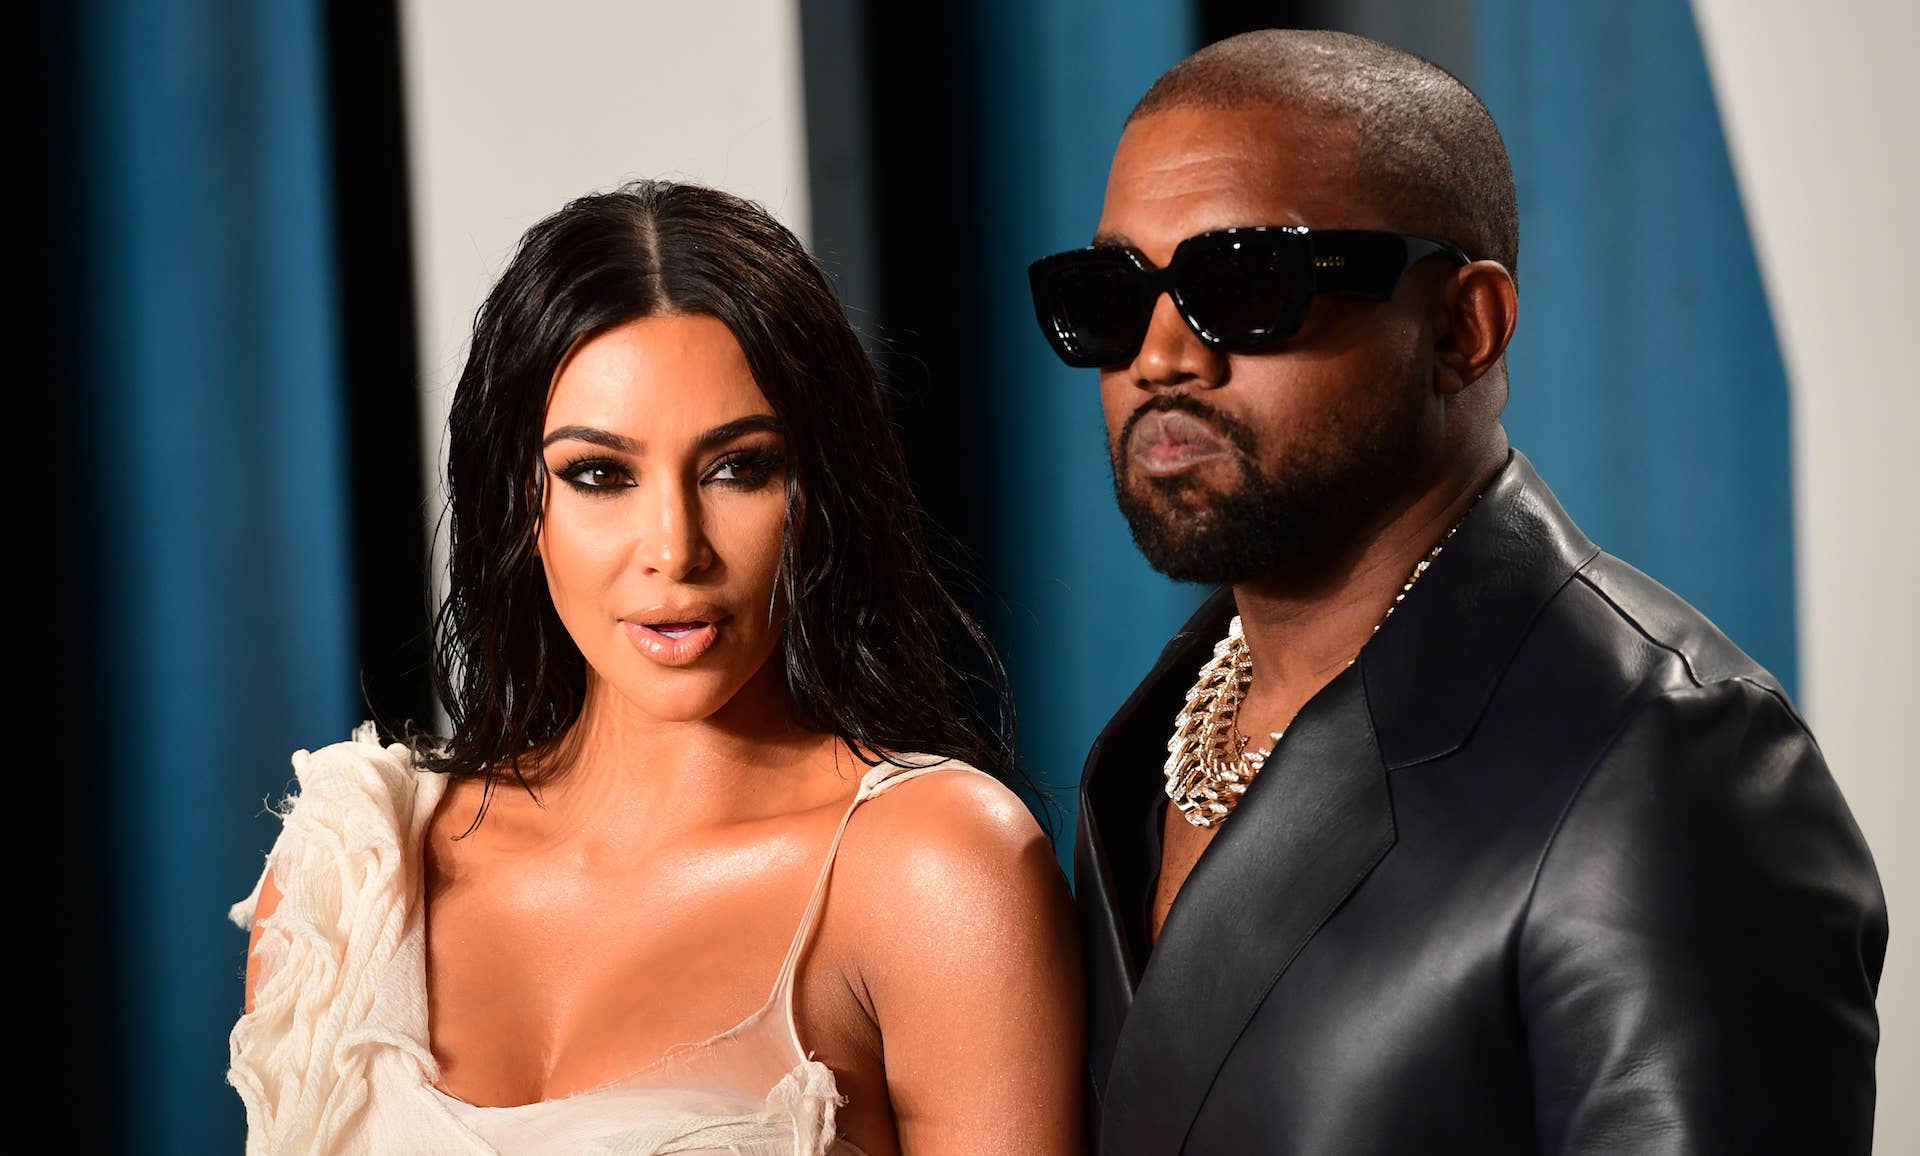 Kodak Black Tries To Date Kim Kardashian With New Pic & Message